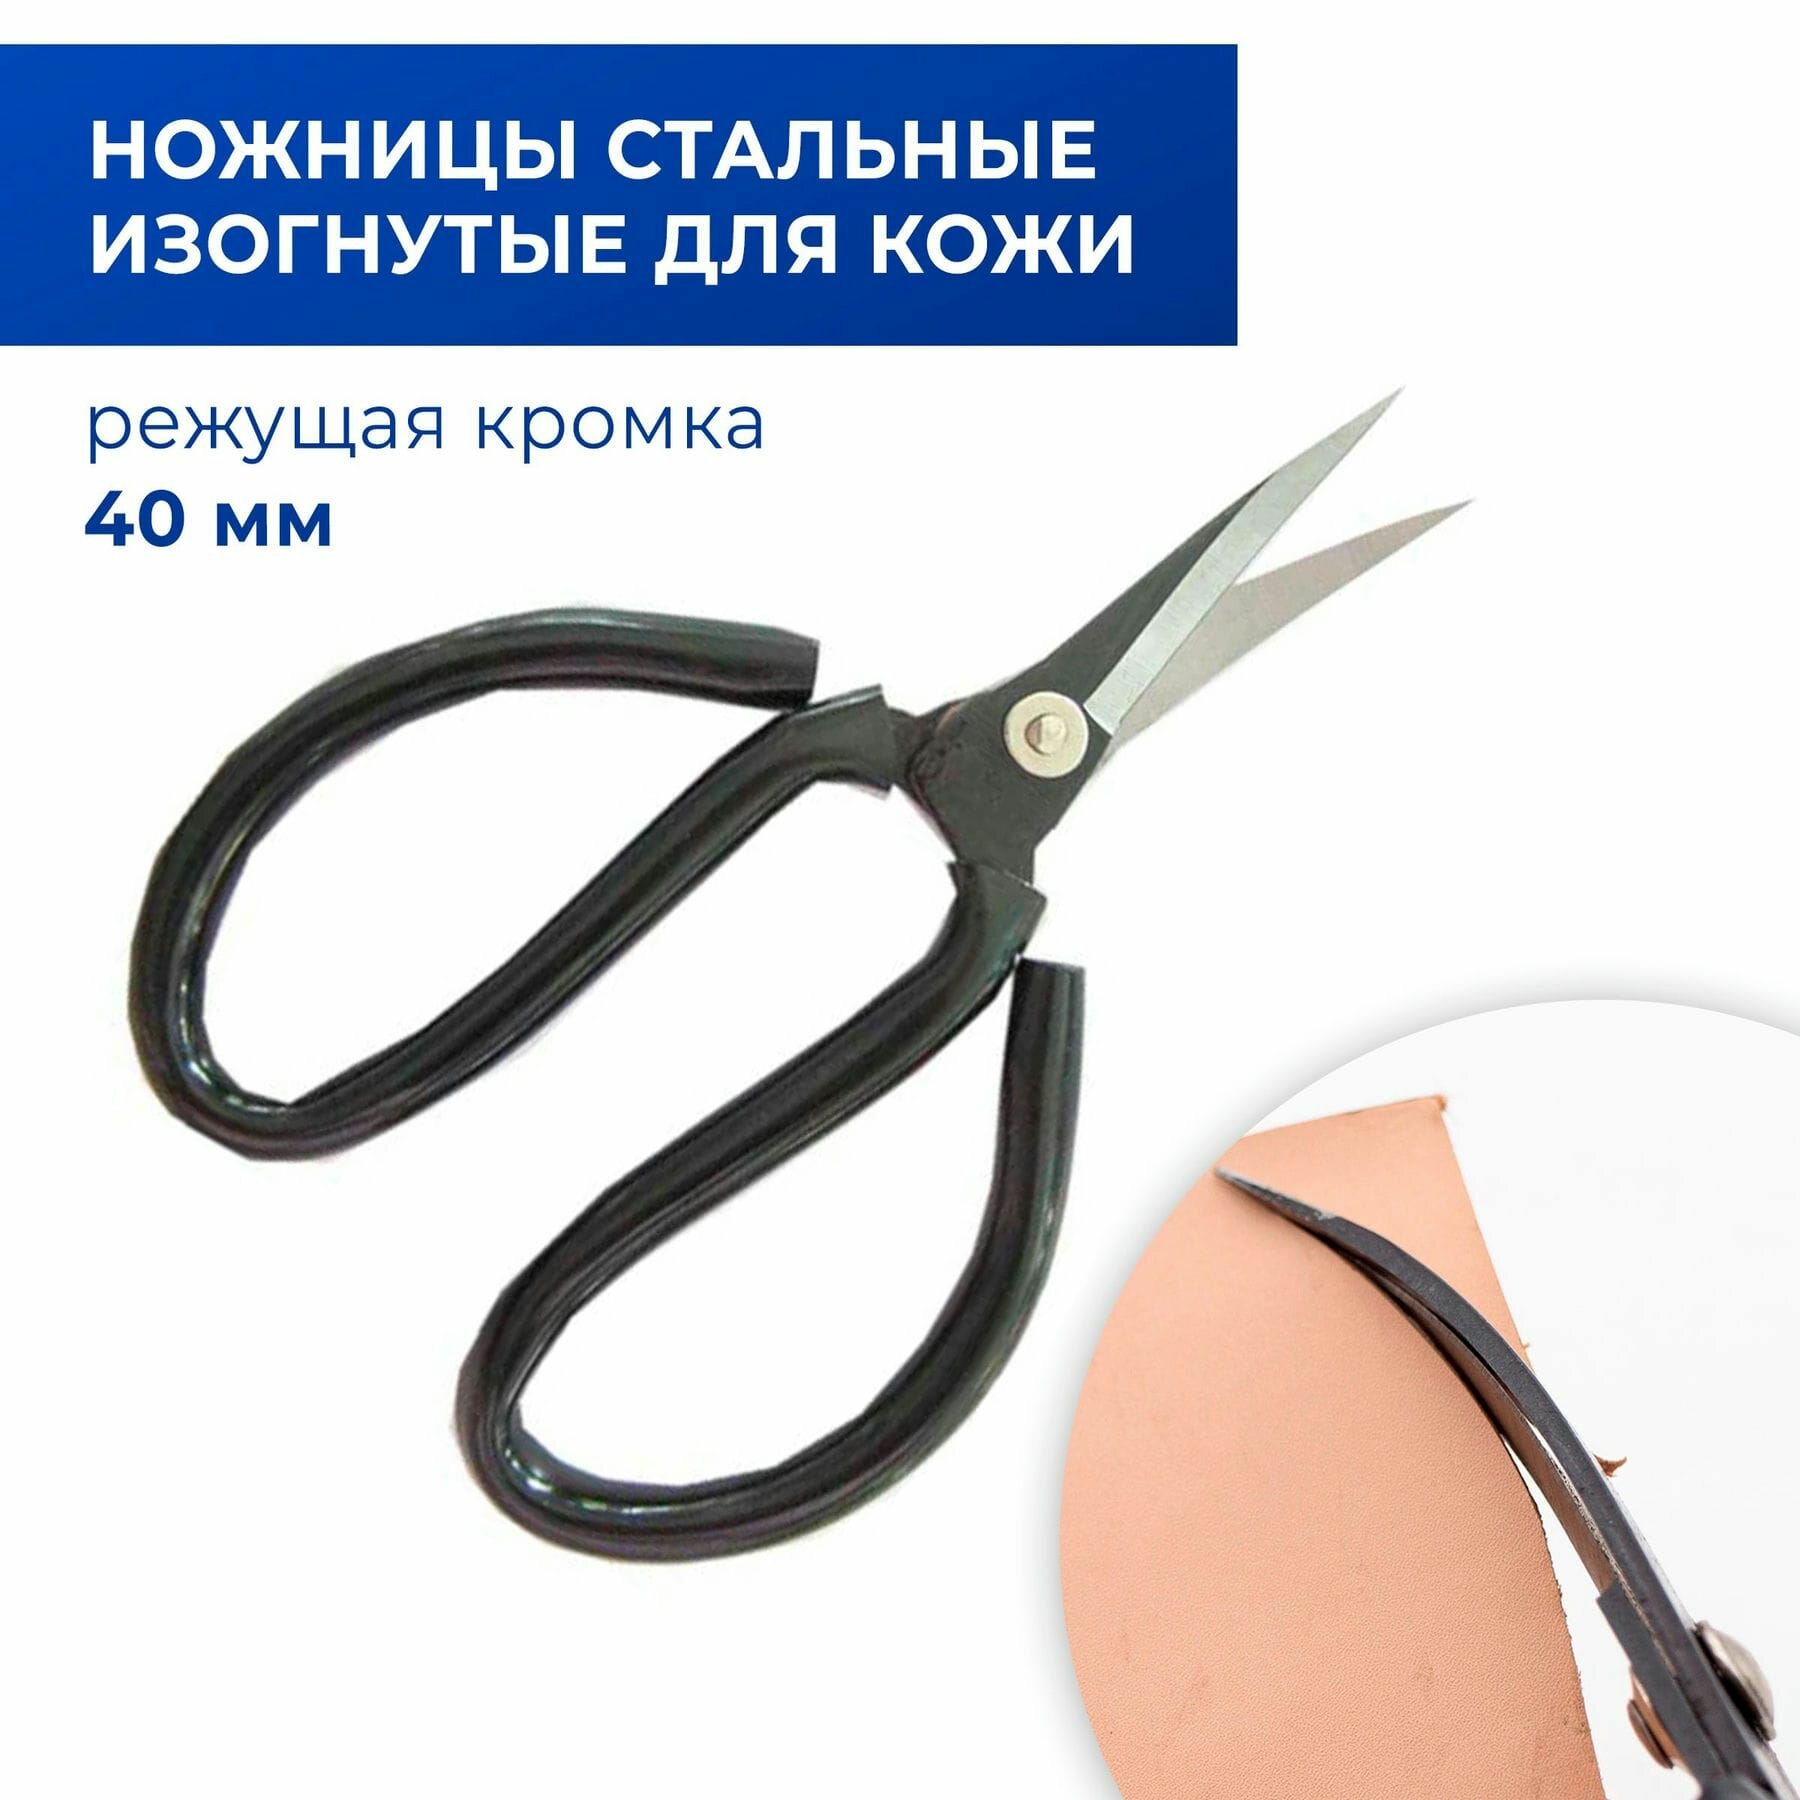 Ножницы для резки кожи и плотной ткани изогнутые малые (стальные, синяя ручка) 14 см